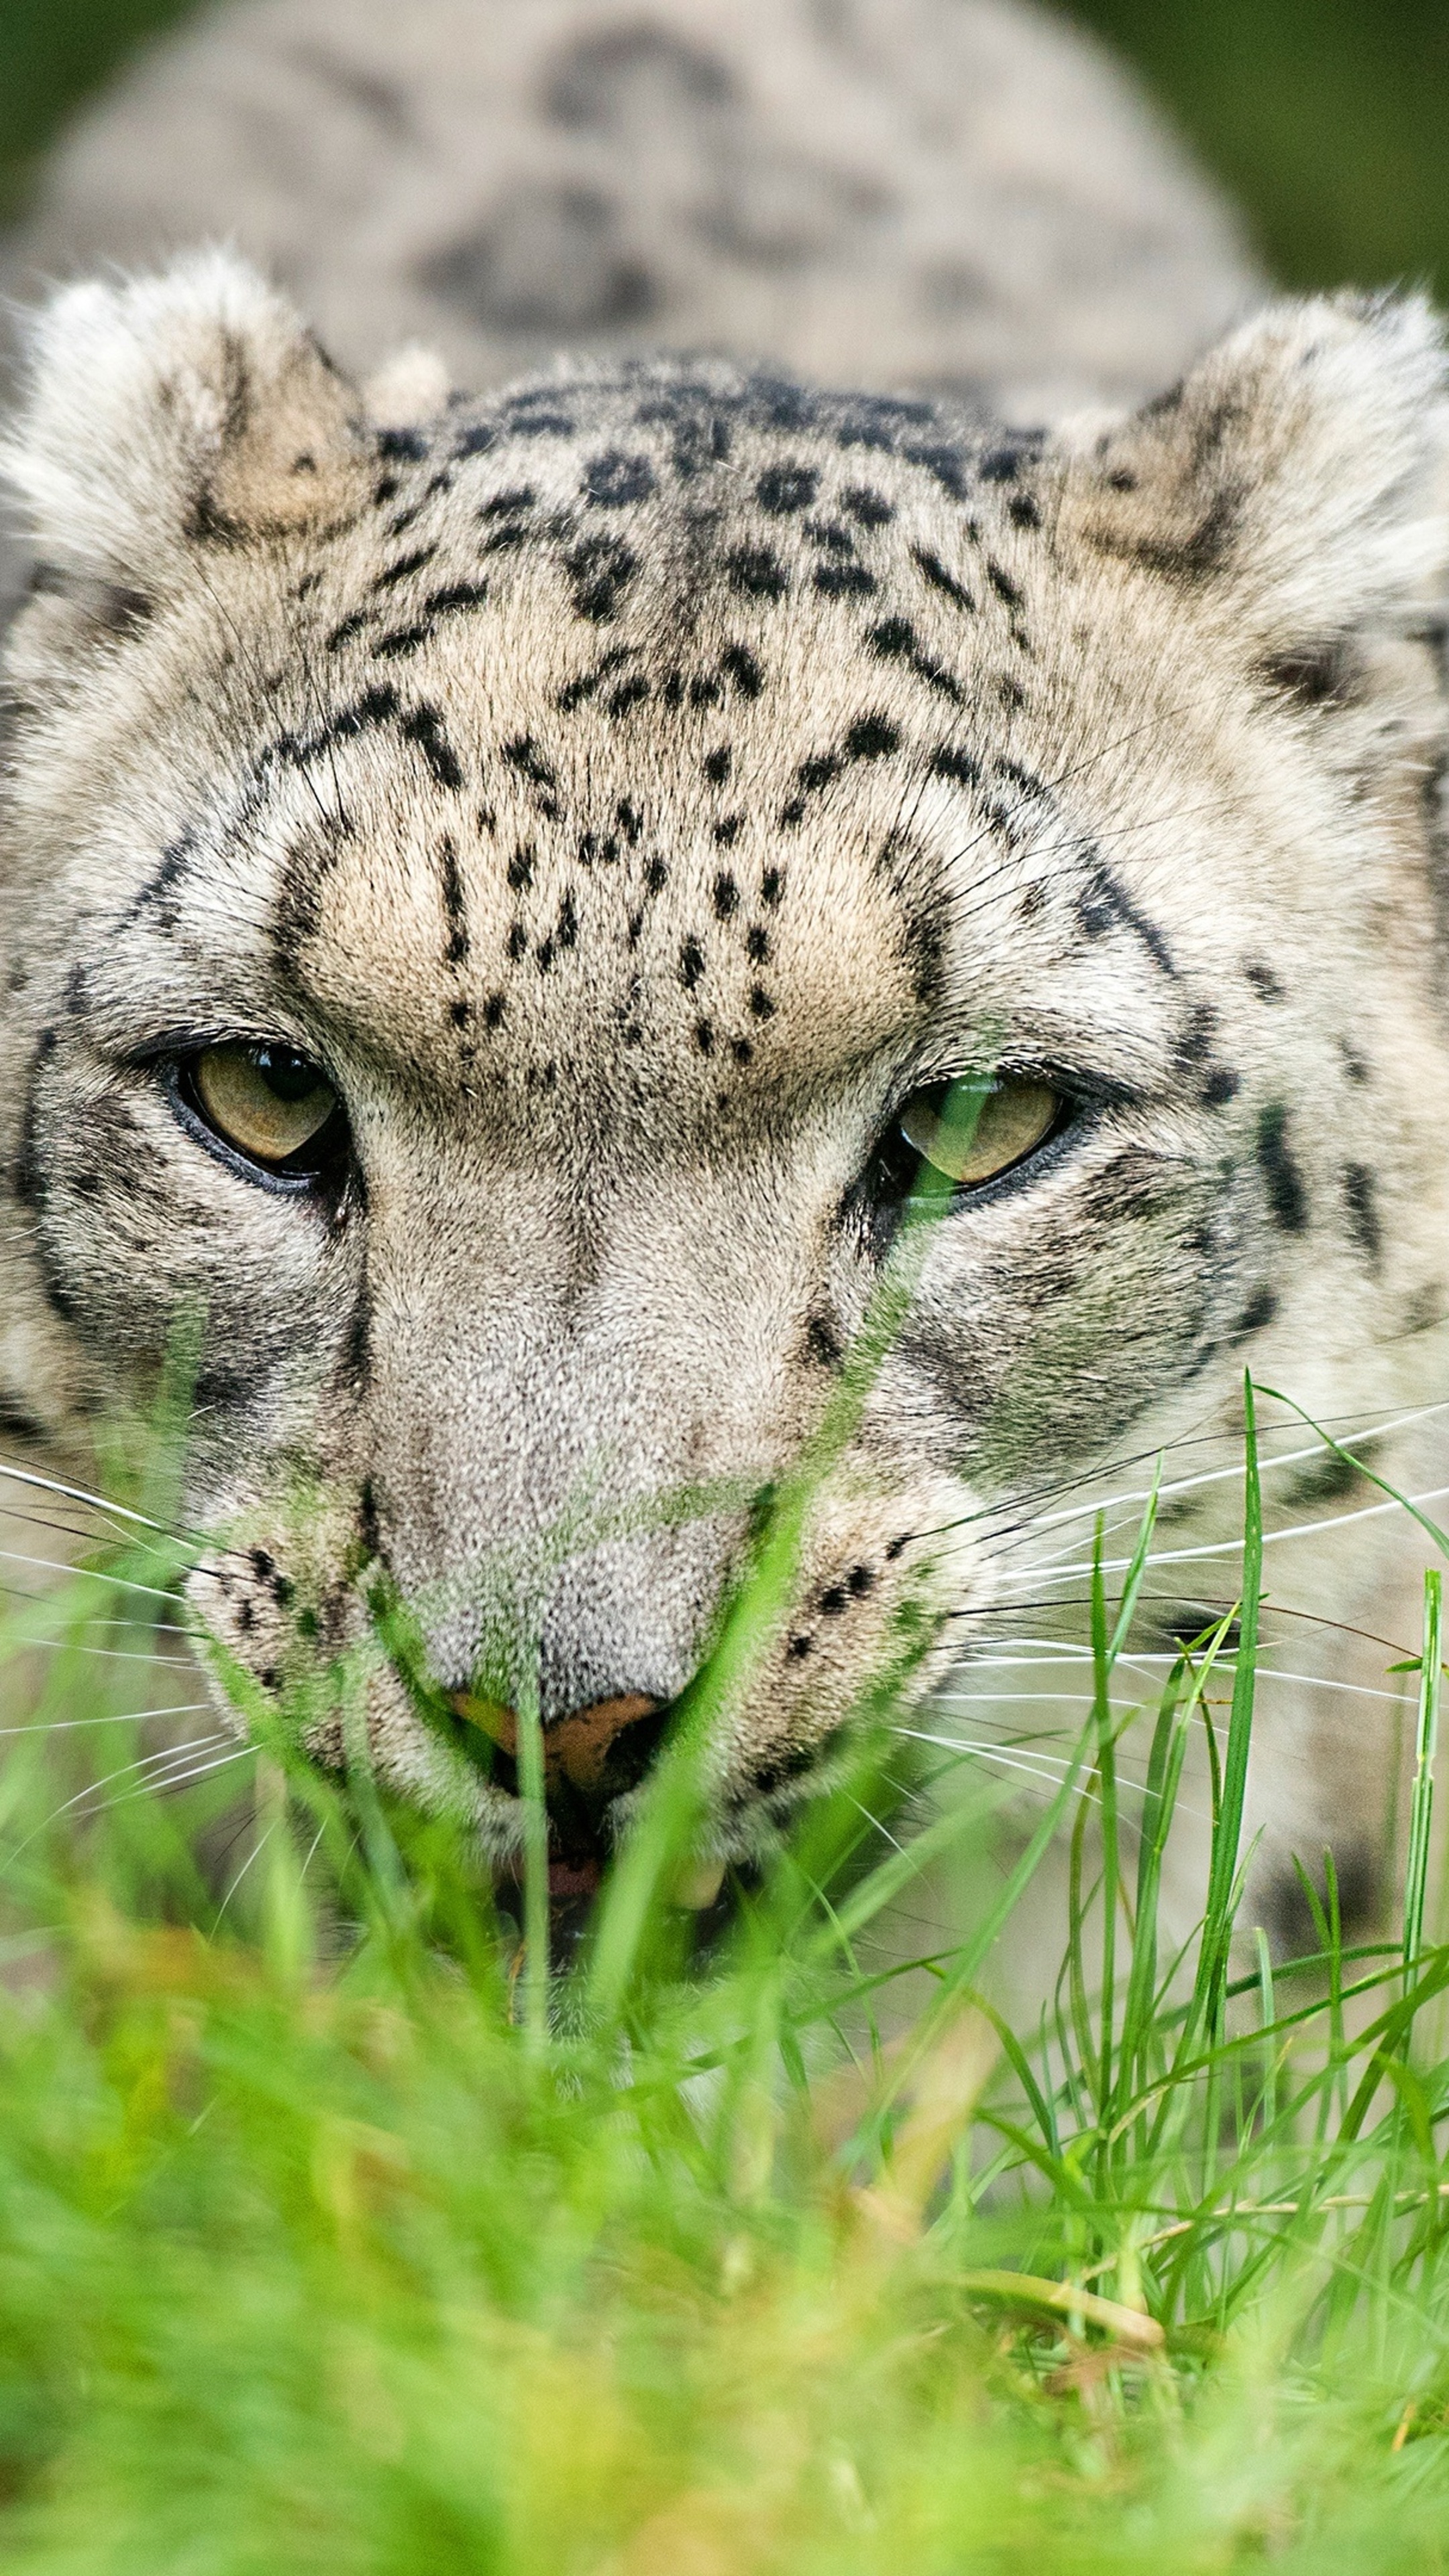 Snow leopard glance 4k, Sony xperia x, Z5 premium hd, 2160x3840 4K Handy